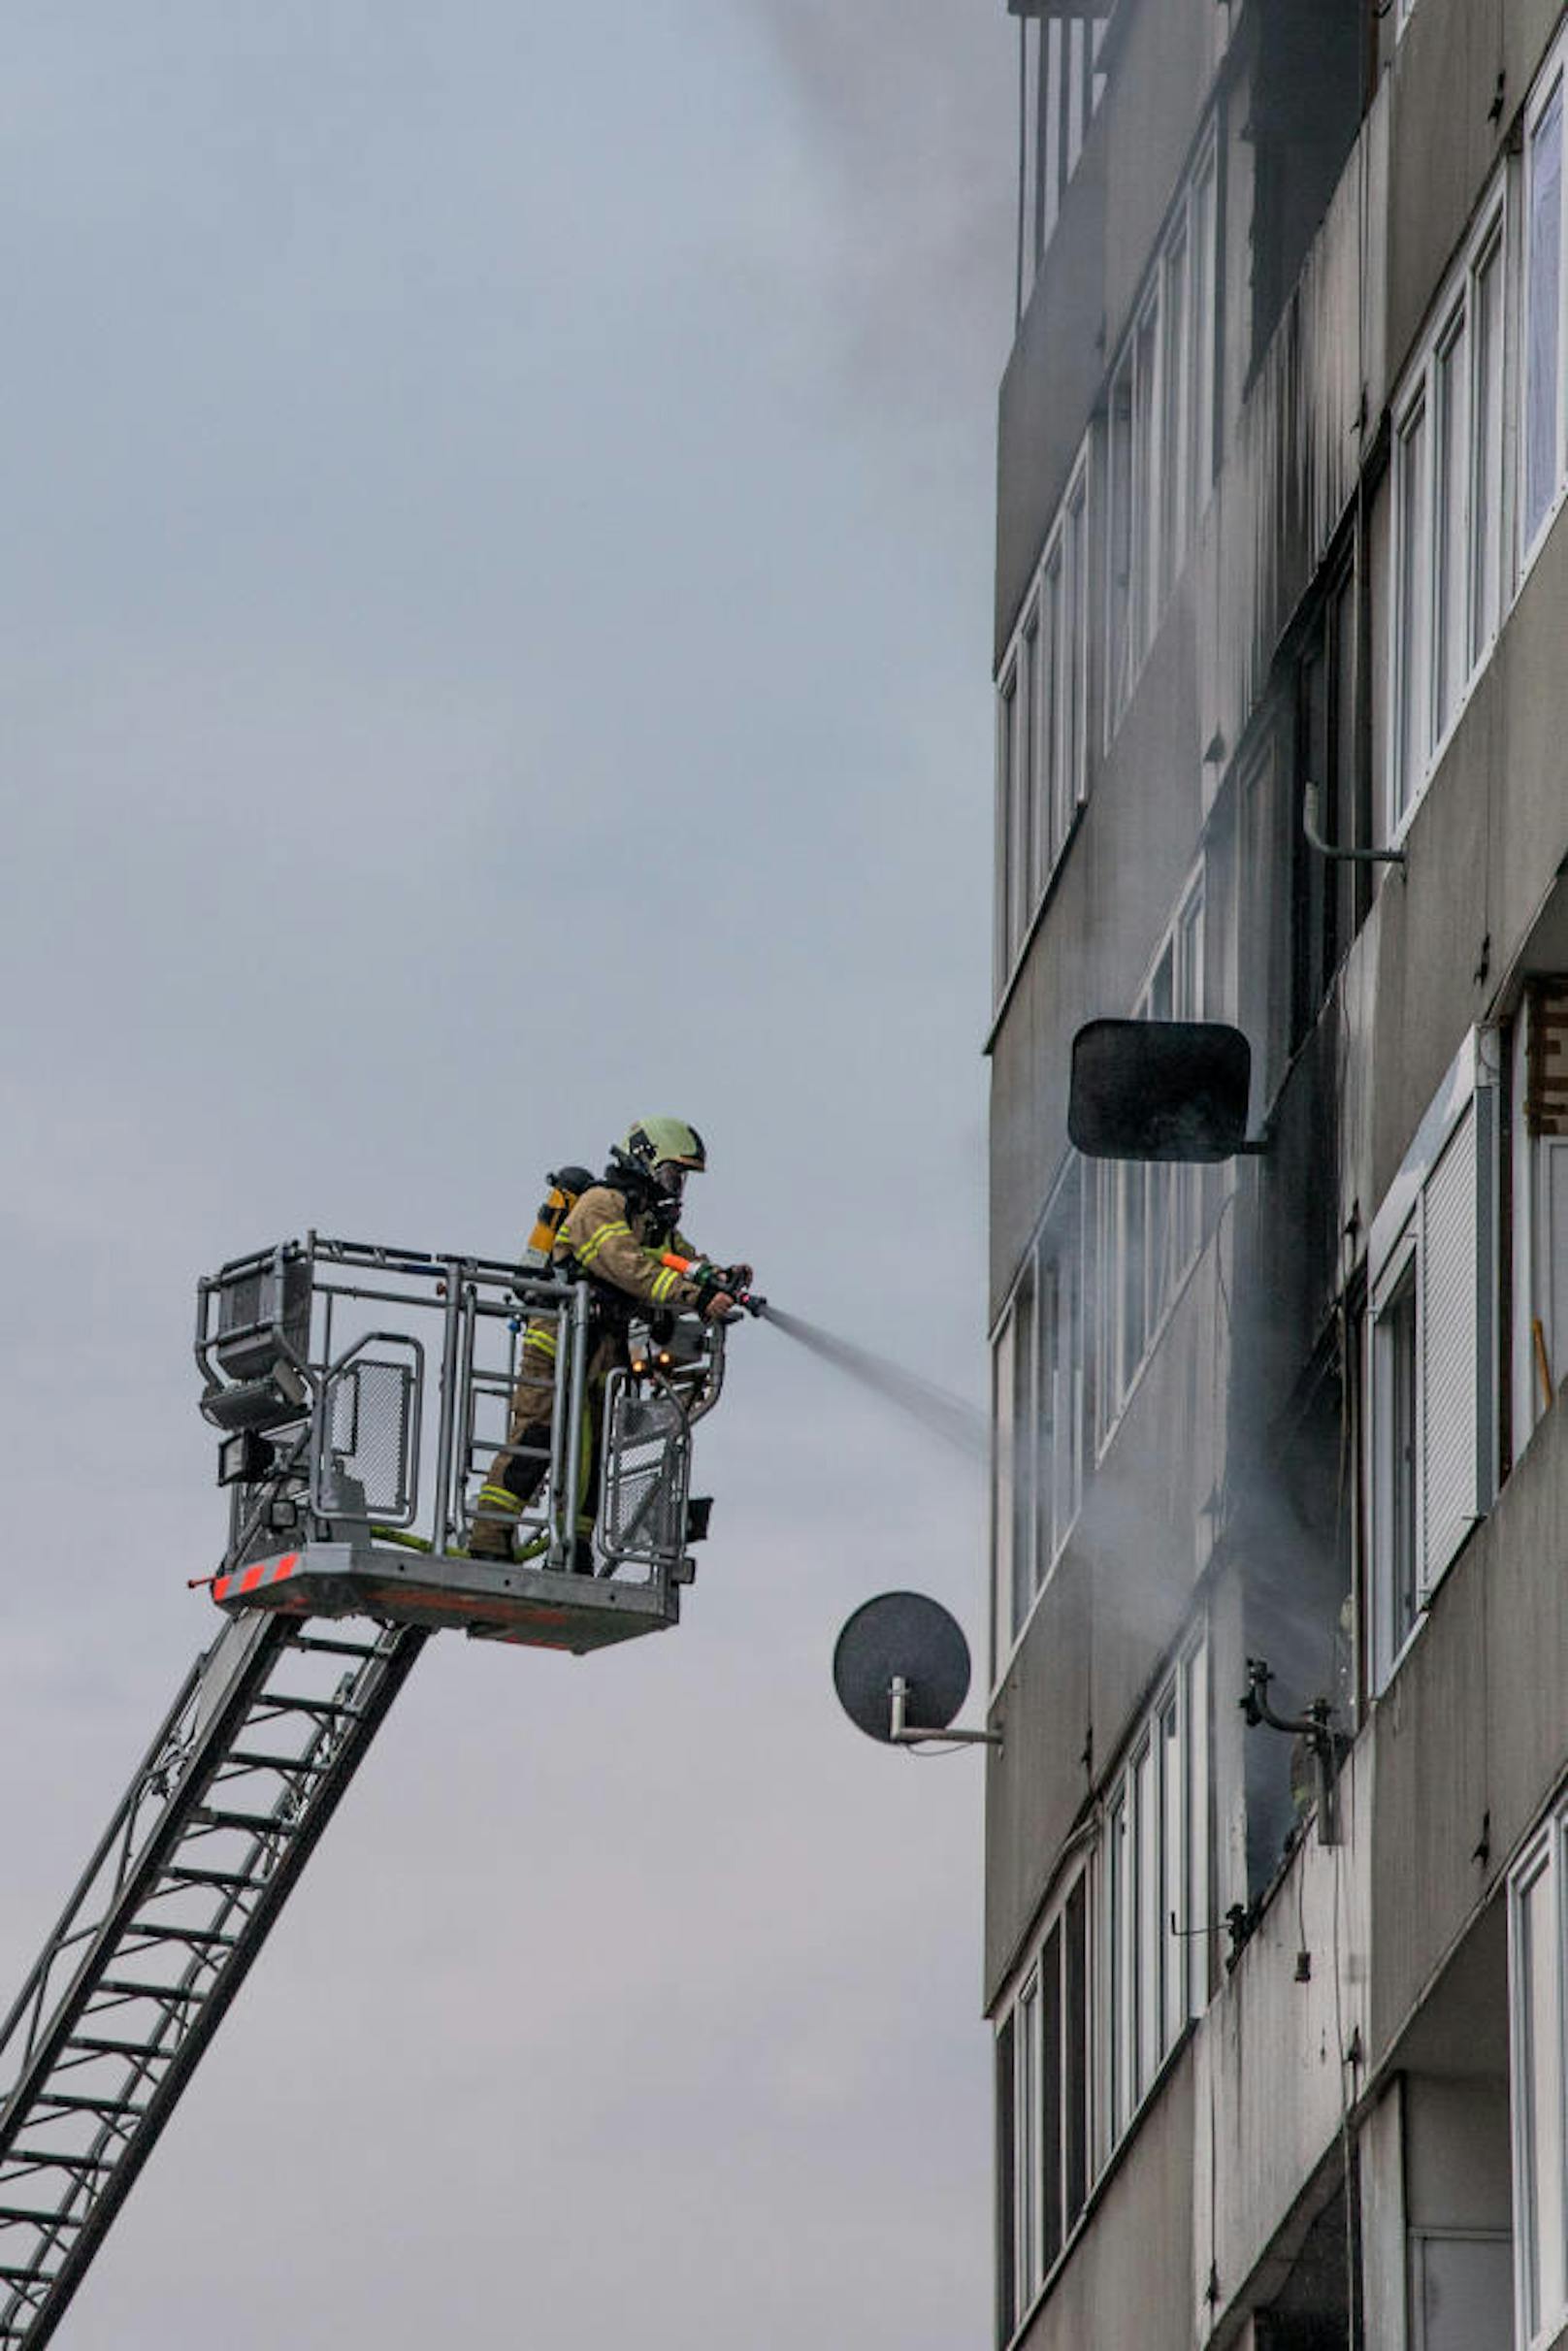 Fünf Personen wurden bei dem Brand im 4. Stock einer Wohnung im Kremplhochhaus verletzt. 